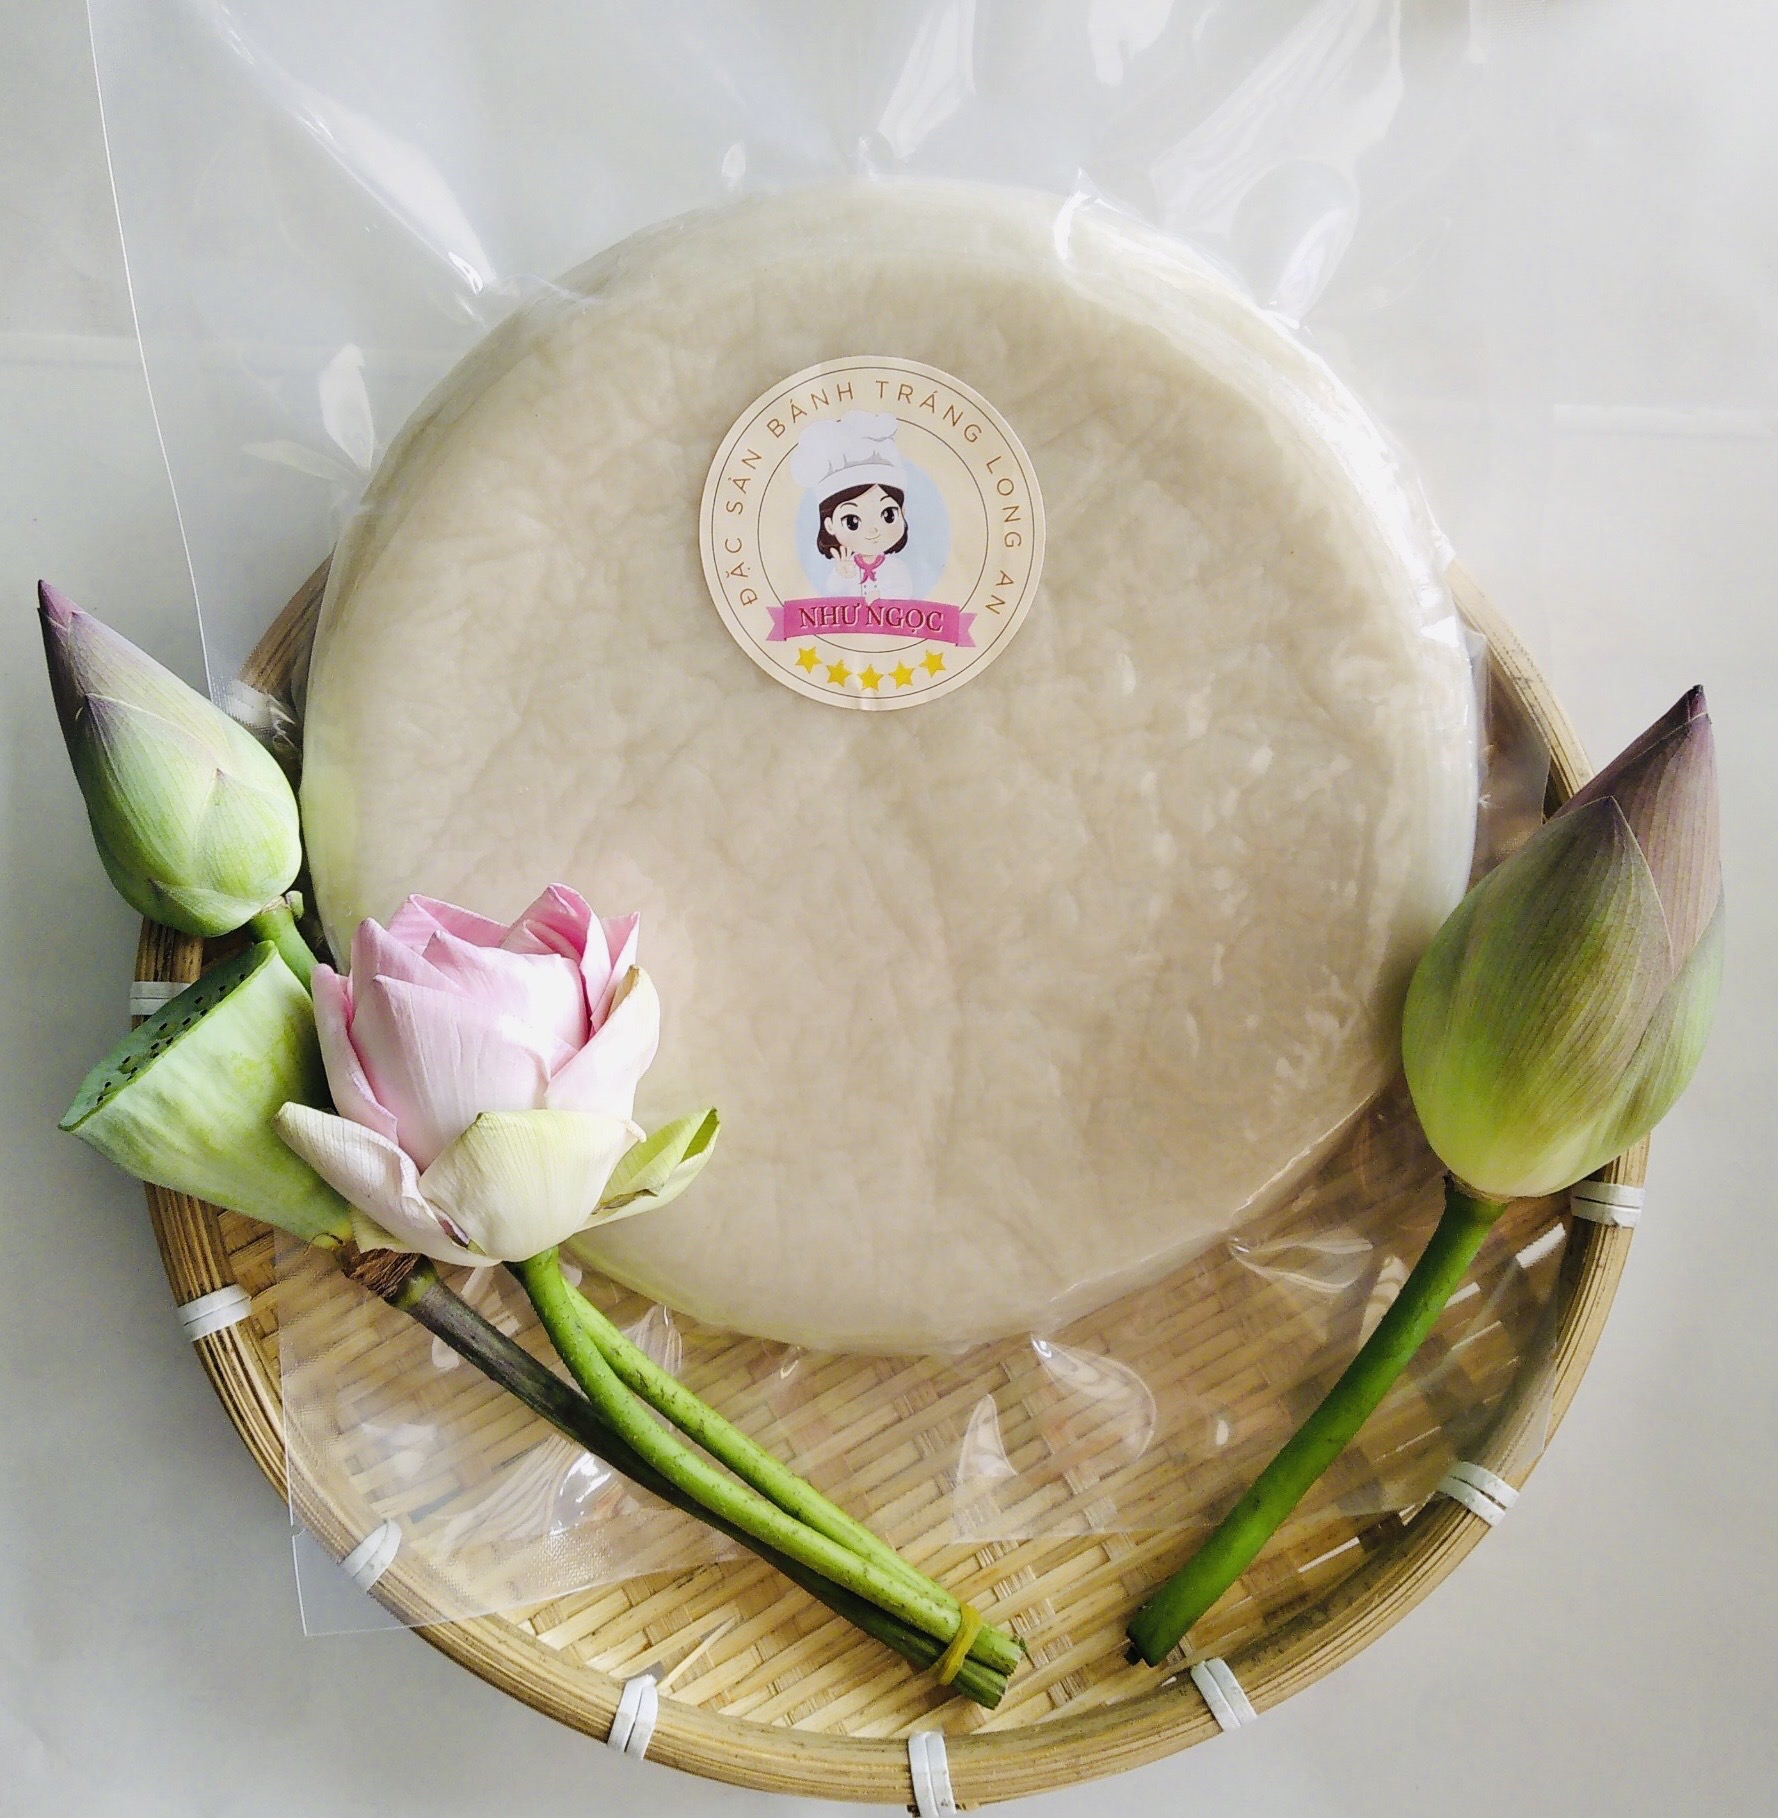 Bánh tráng phơi sương Tây Ninh (500g) - Đồ ăn vặt Như Ngọc - Bánh hút chân không an toàn vệ sinh (không kèm topping)